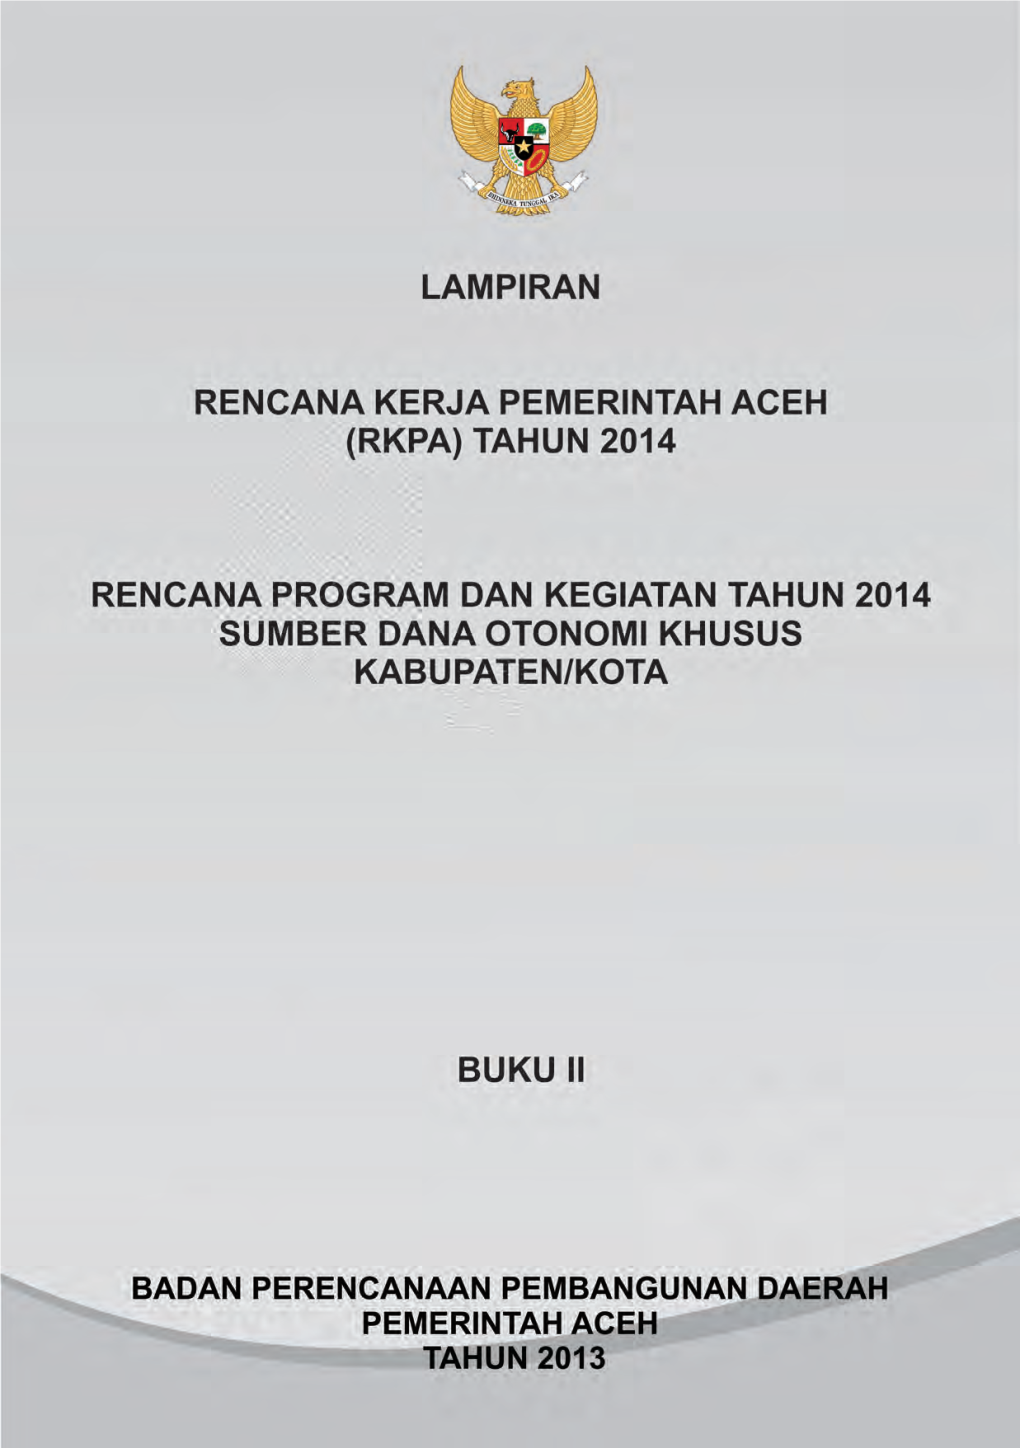 Lampiran Rencana Kerja Pemerintah Aceh (RKPA) Tahun 2014 I LAMPIRAN 1